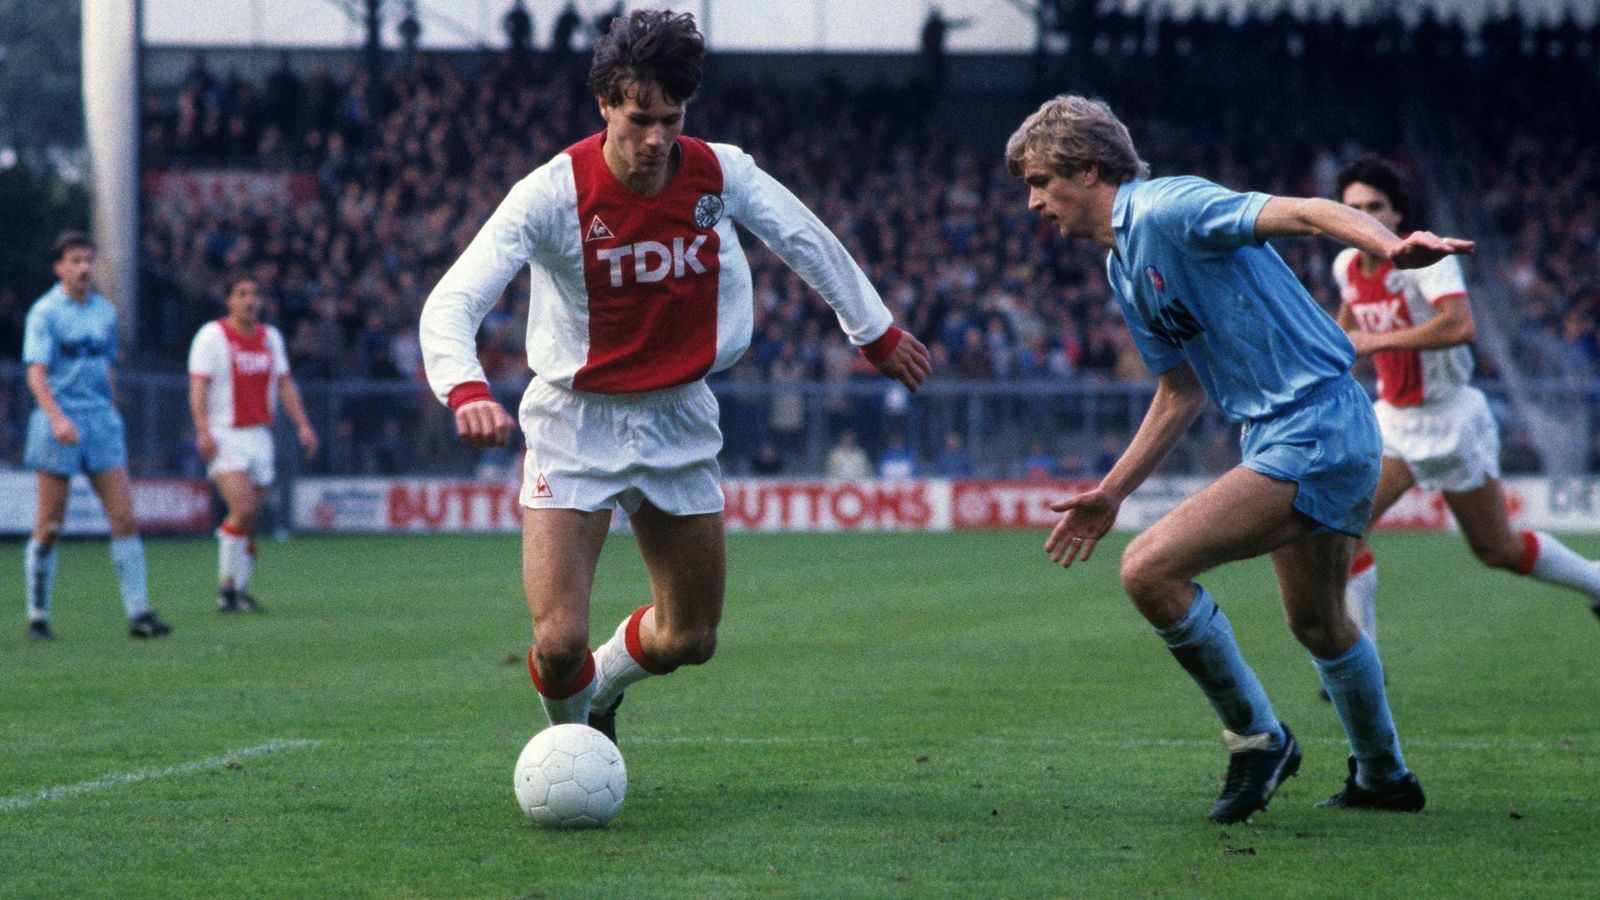 
                <strong>Platz 9 - Marco van Basten (Ajax Amsterdam)</strong><br>
                Alter bei seinem Dreierpack: 19,9 JahreSpiel gegen: Differdange 03 (3. Oktober 1984)
              